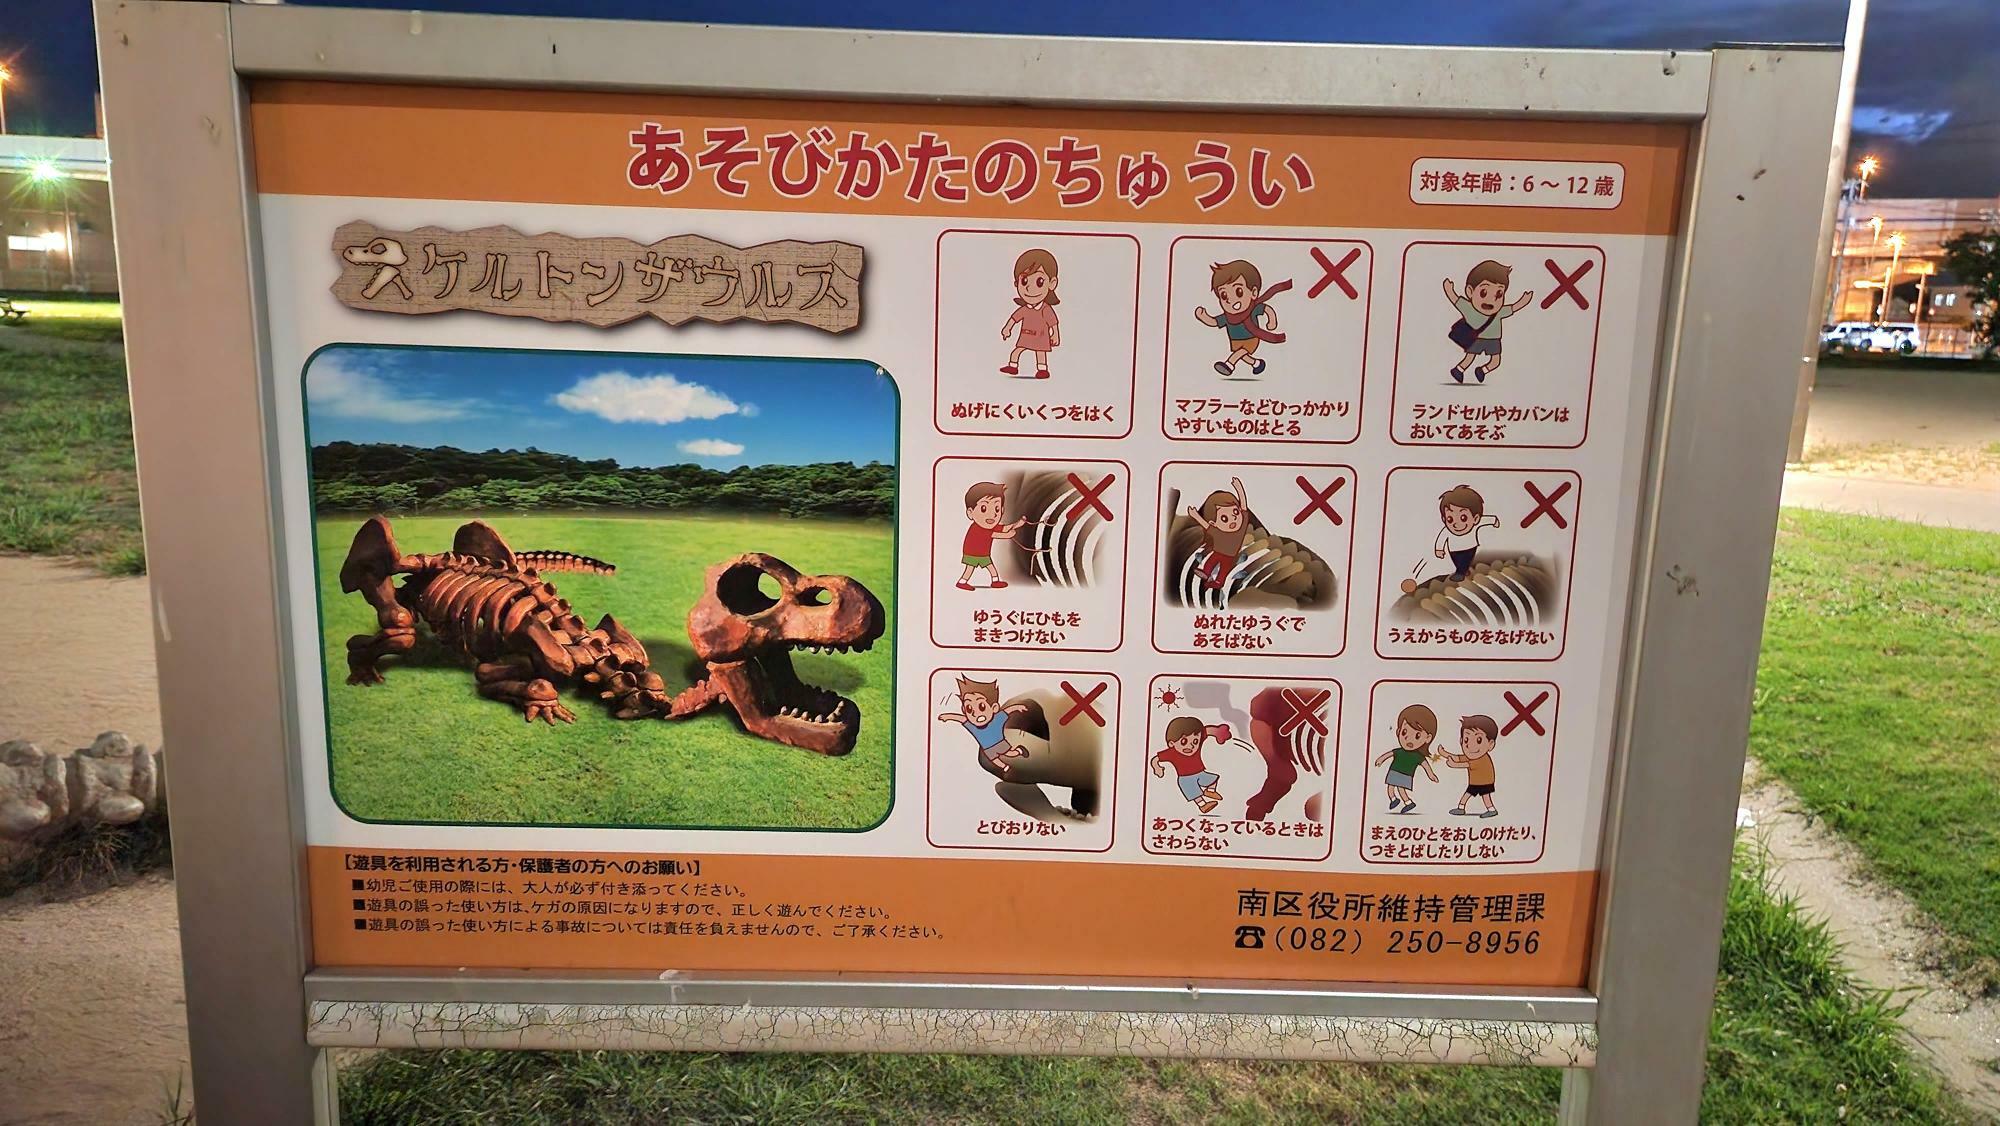 恐竜の遊具の前には、遊びかたの注意点をまとめた看板がありました